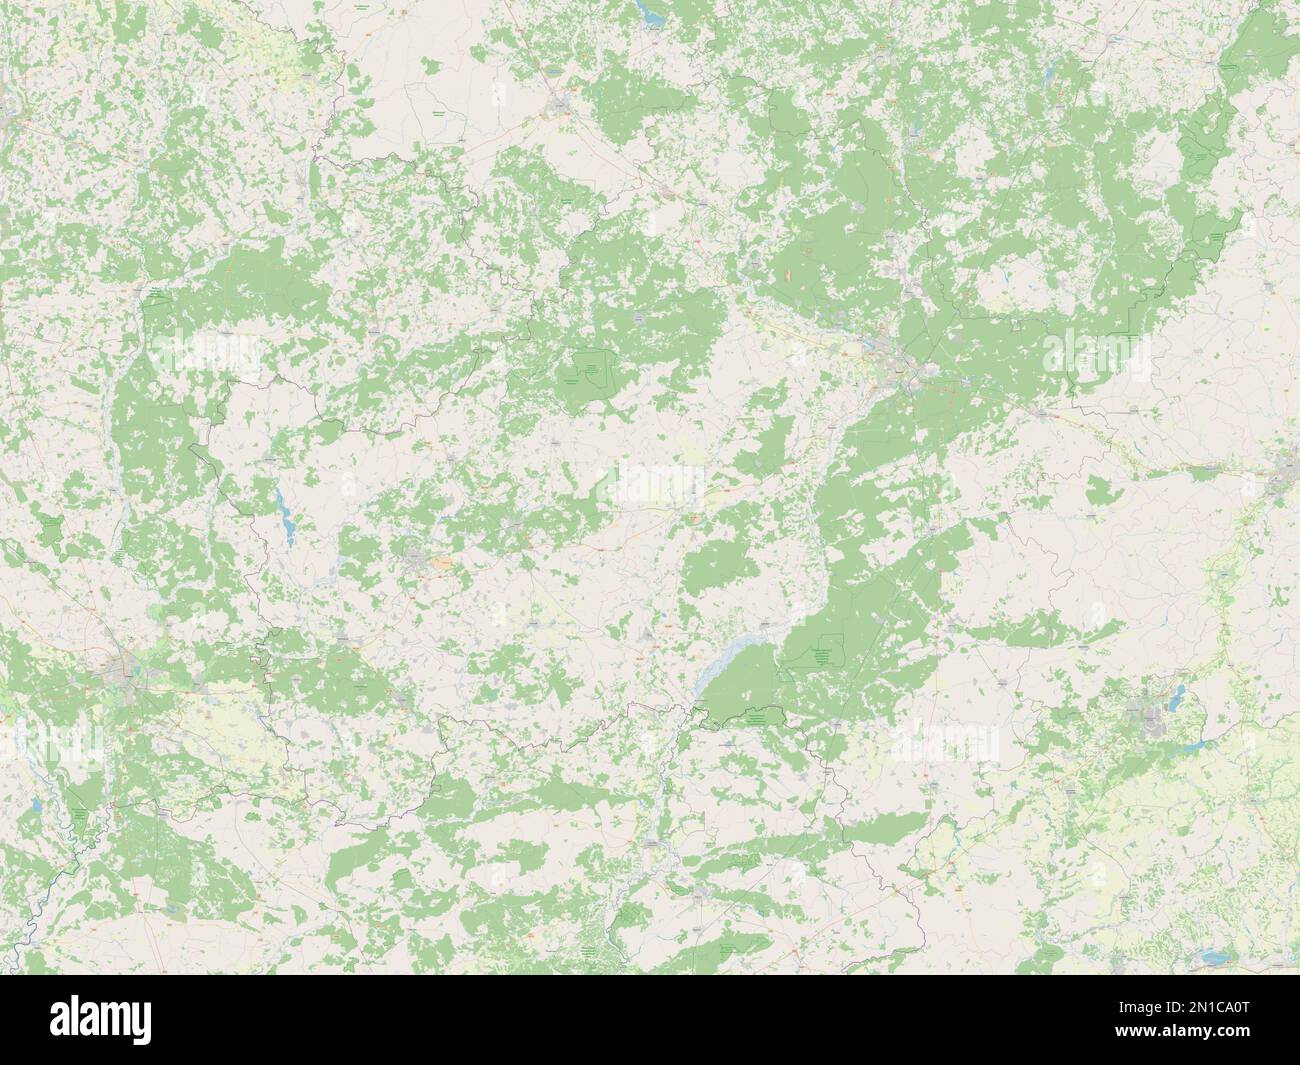 Bryansk, region of Russia. Open Street Map Stock Photo